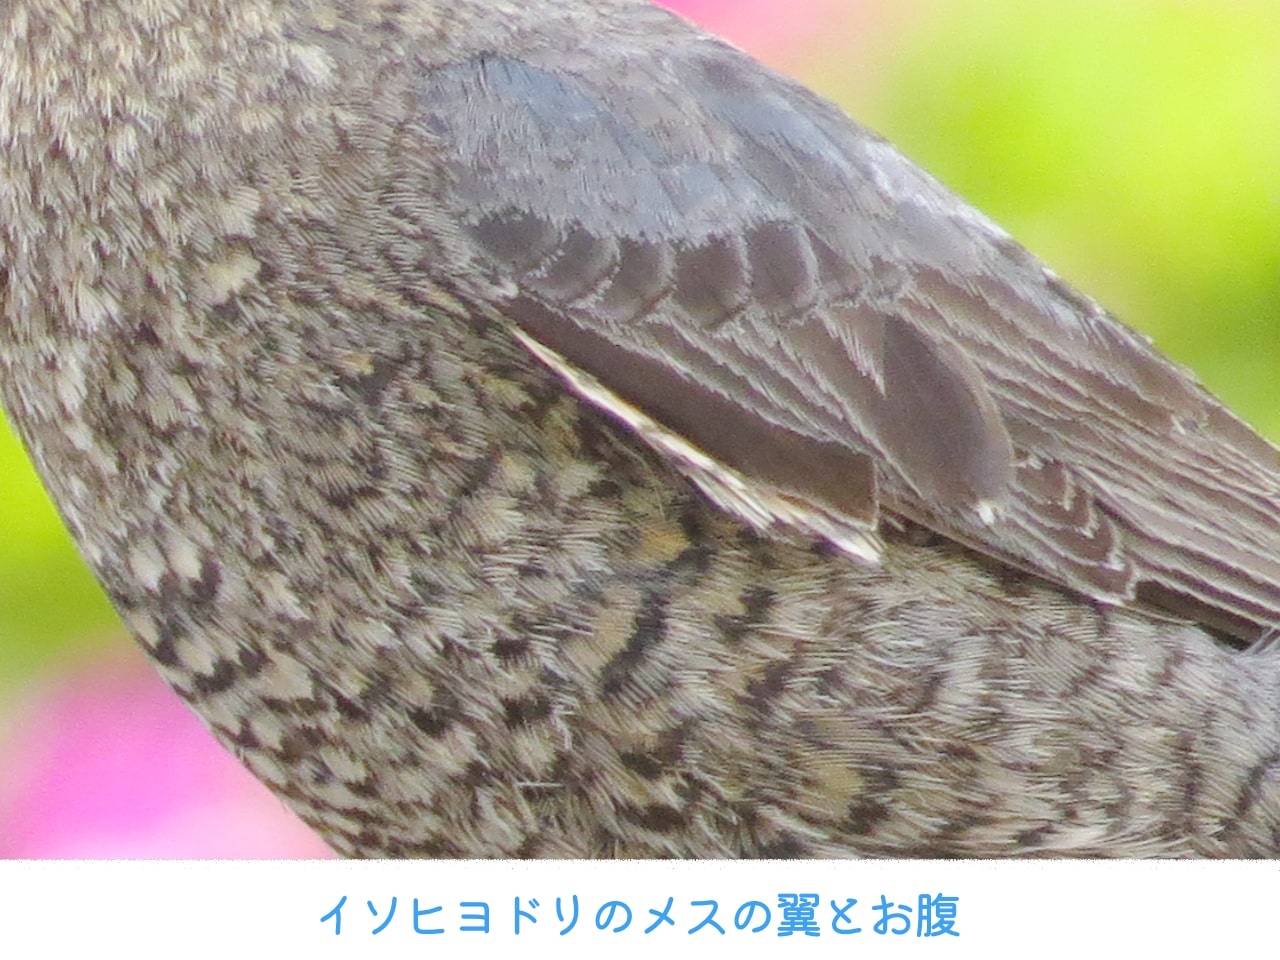 イソヒヨドリのメスの翼とお腹の写真